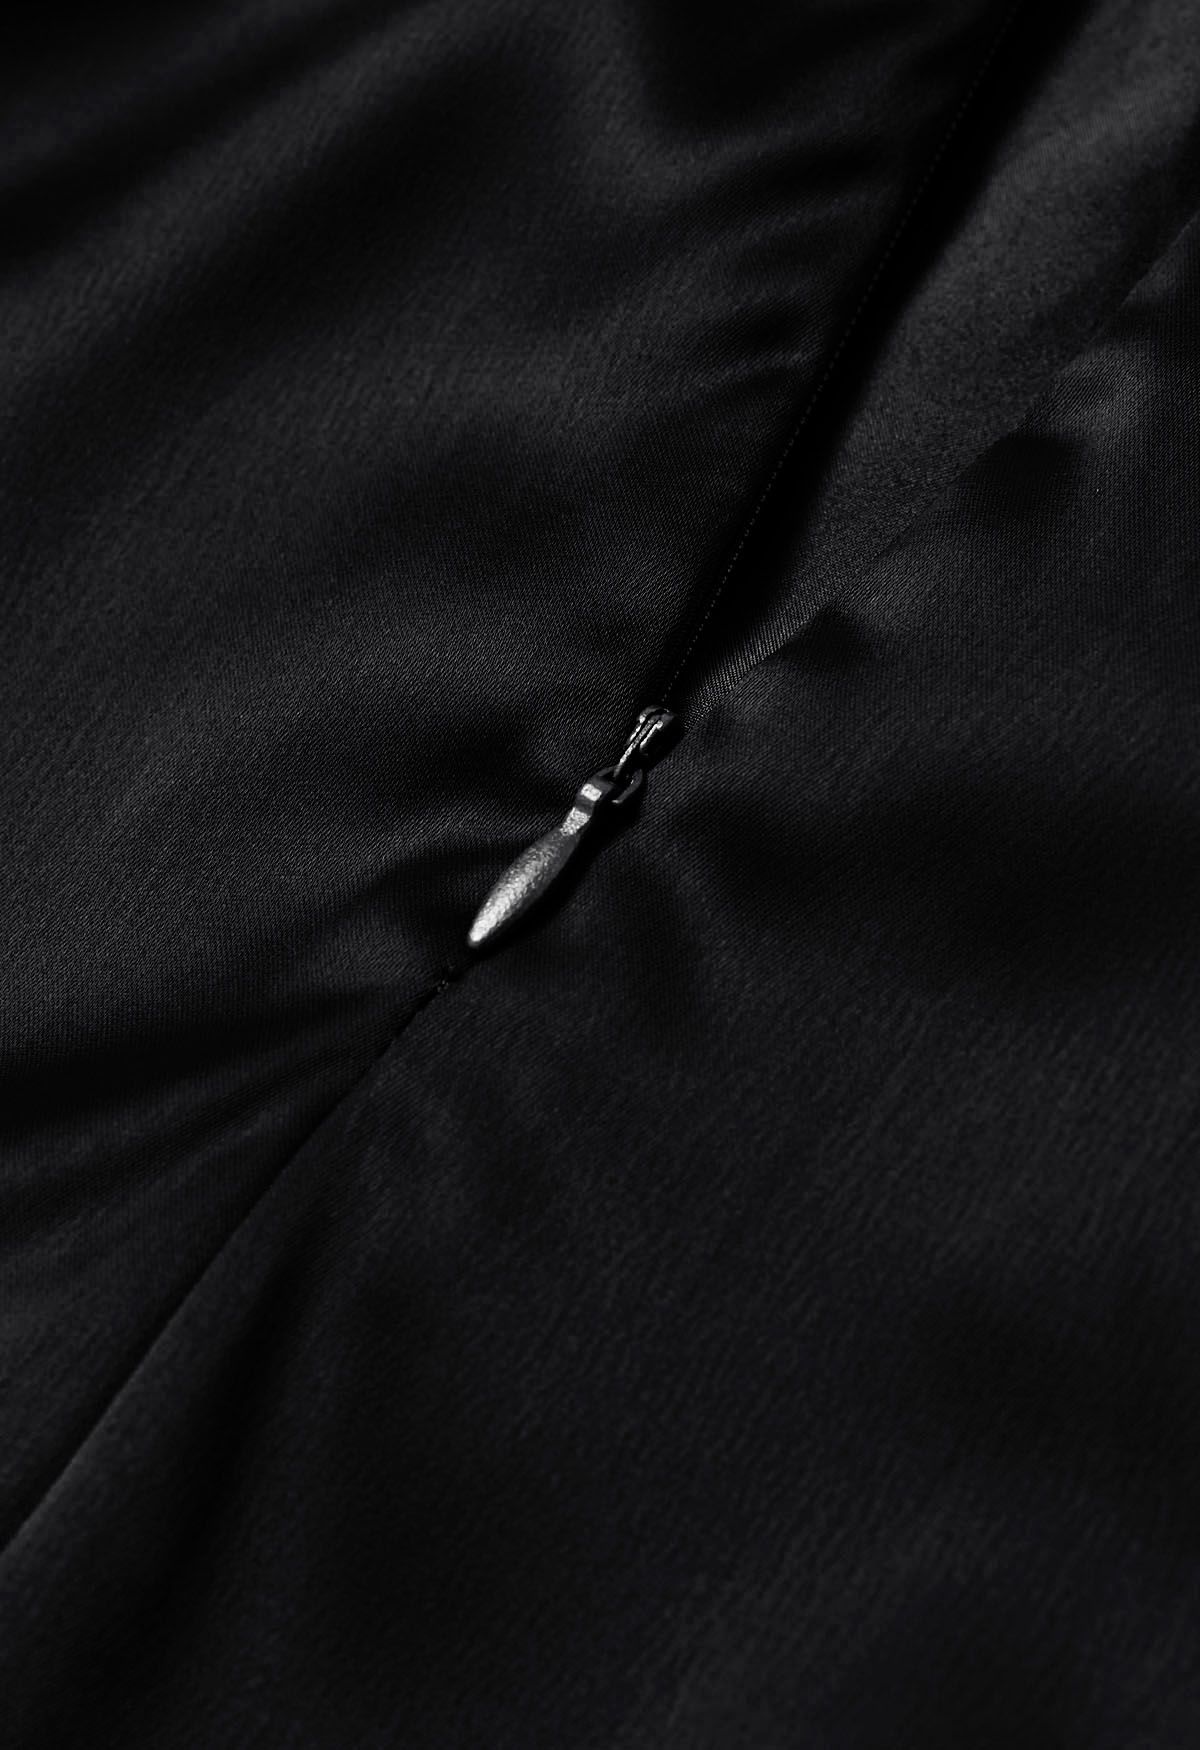 Plunging V-Neck Ruched Waist Satin Dress in Black